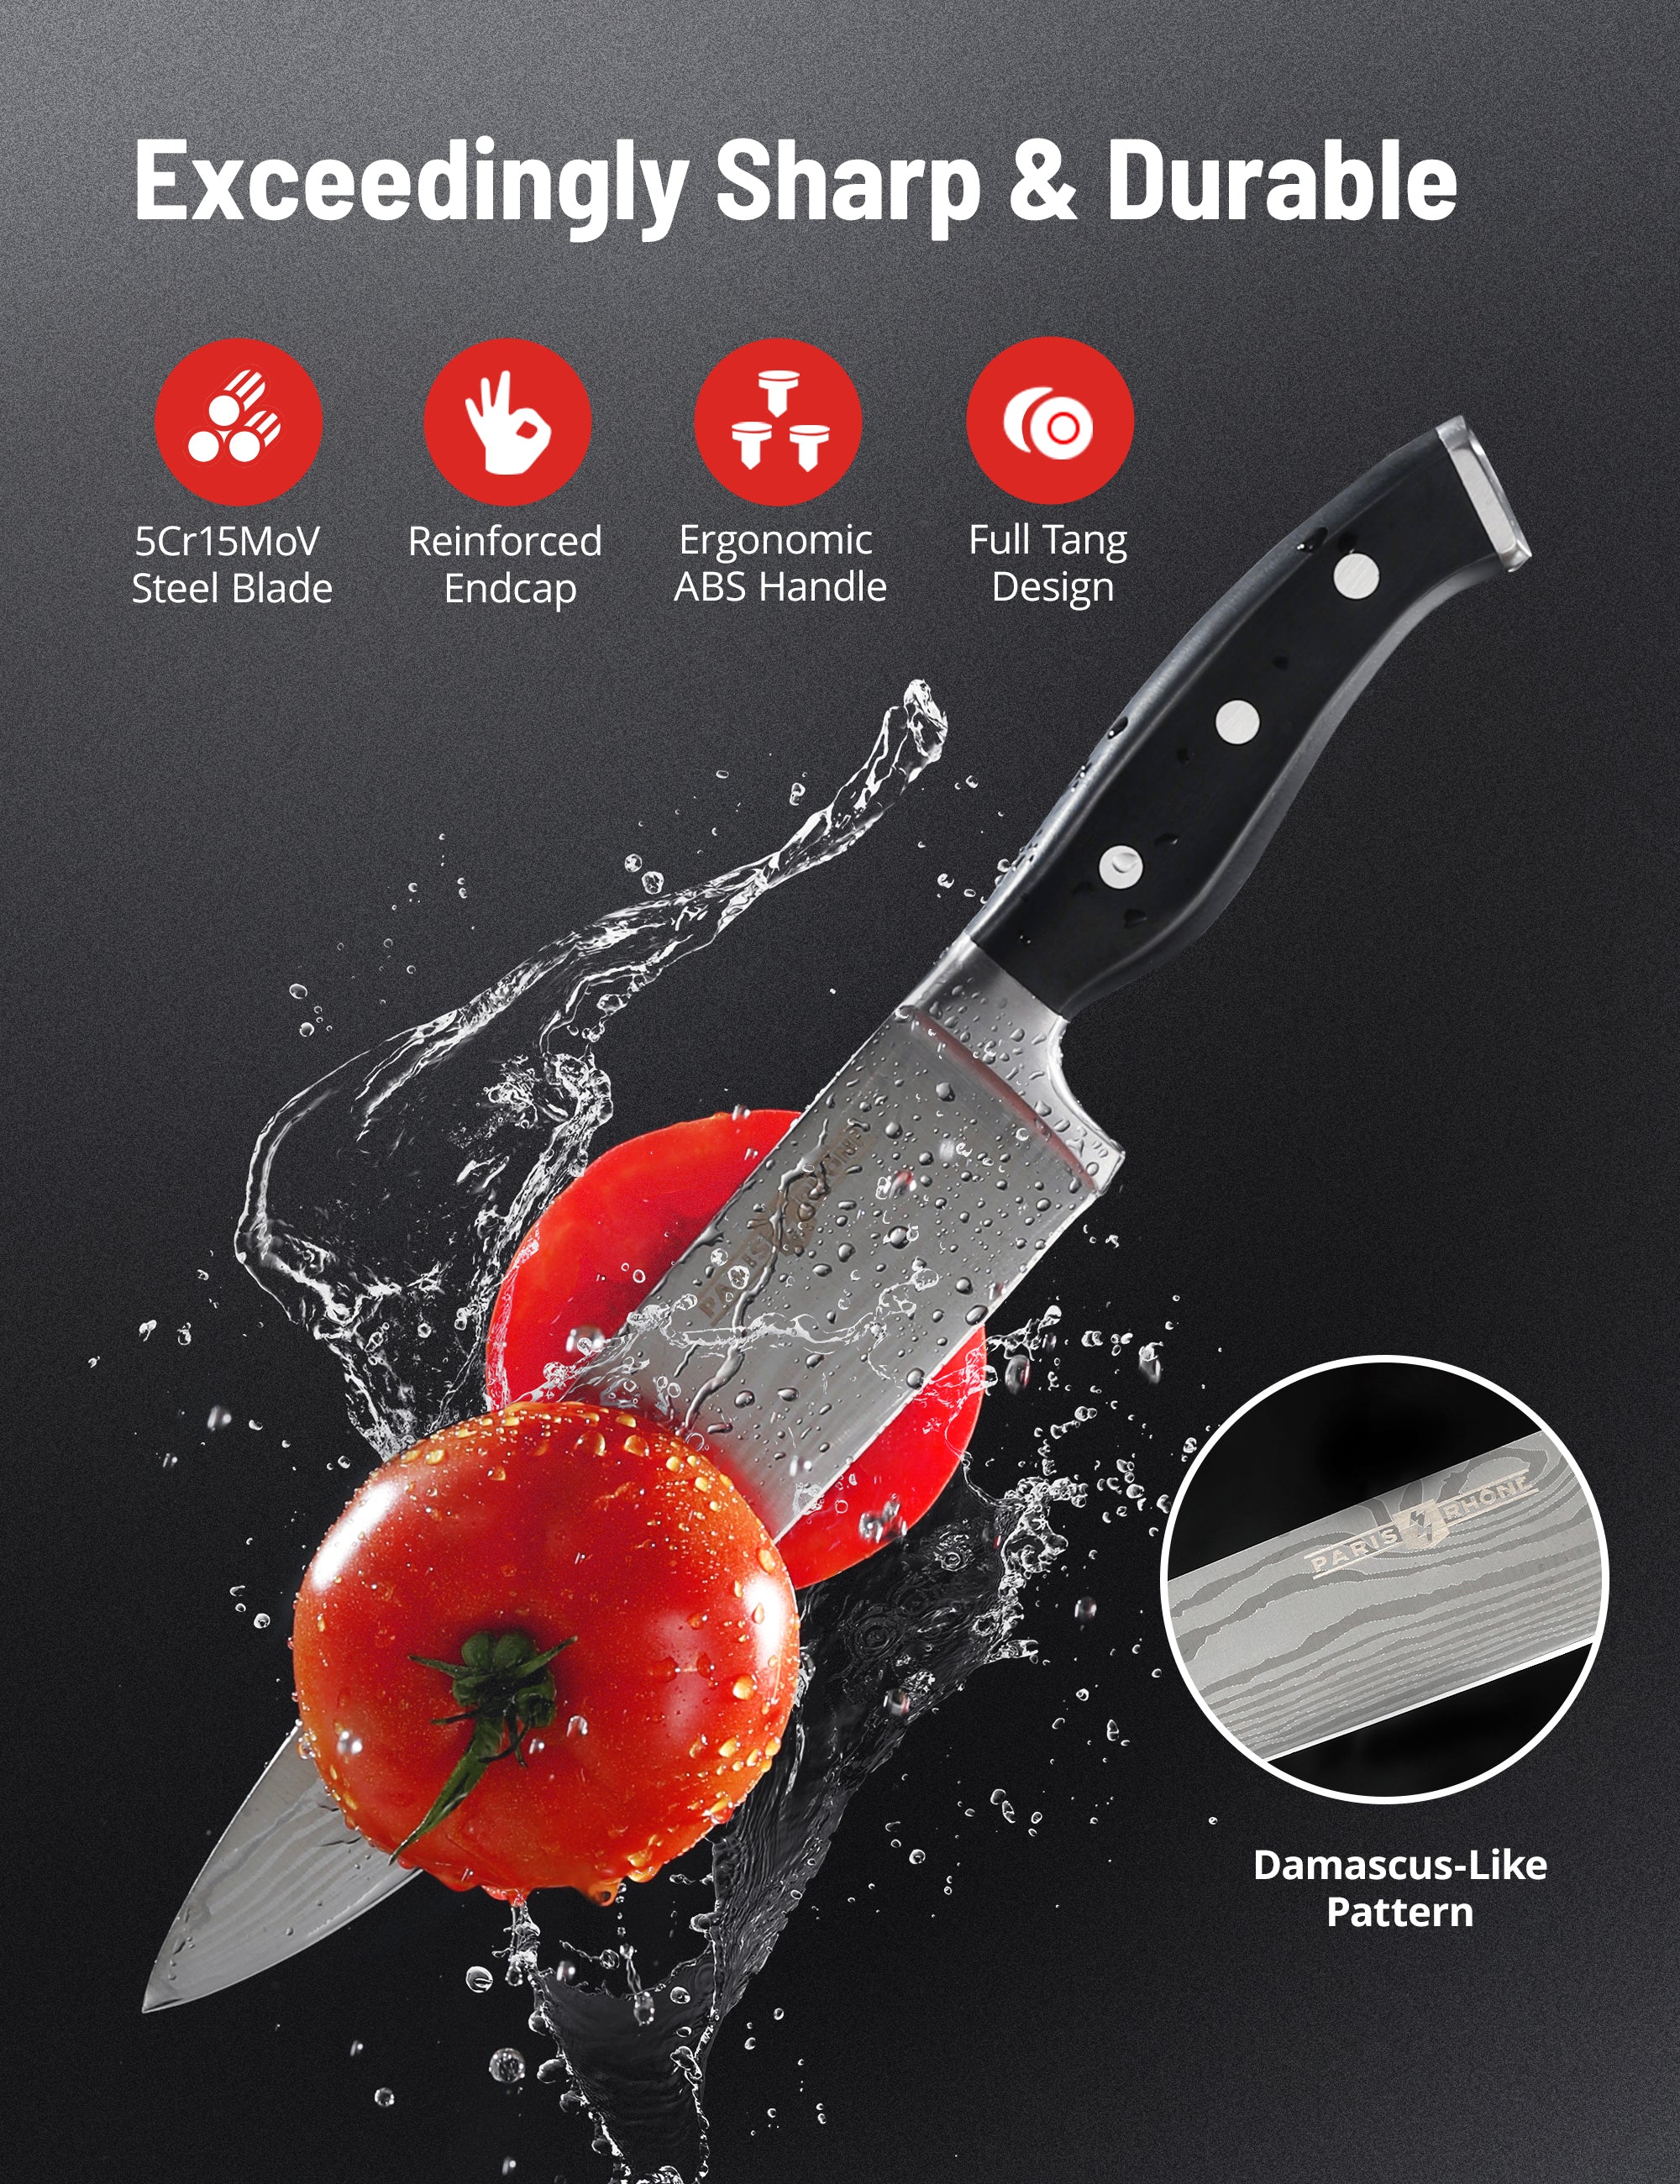 UTAH KNIFE MAKING KIT - S909 - IR ORANGE RESIN - Premium Knife Supply